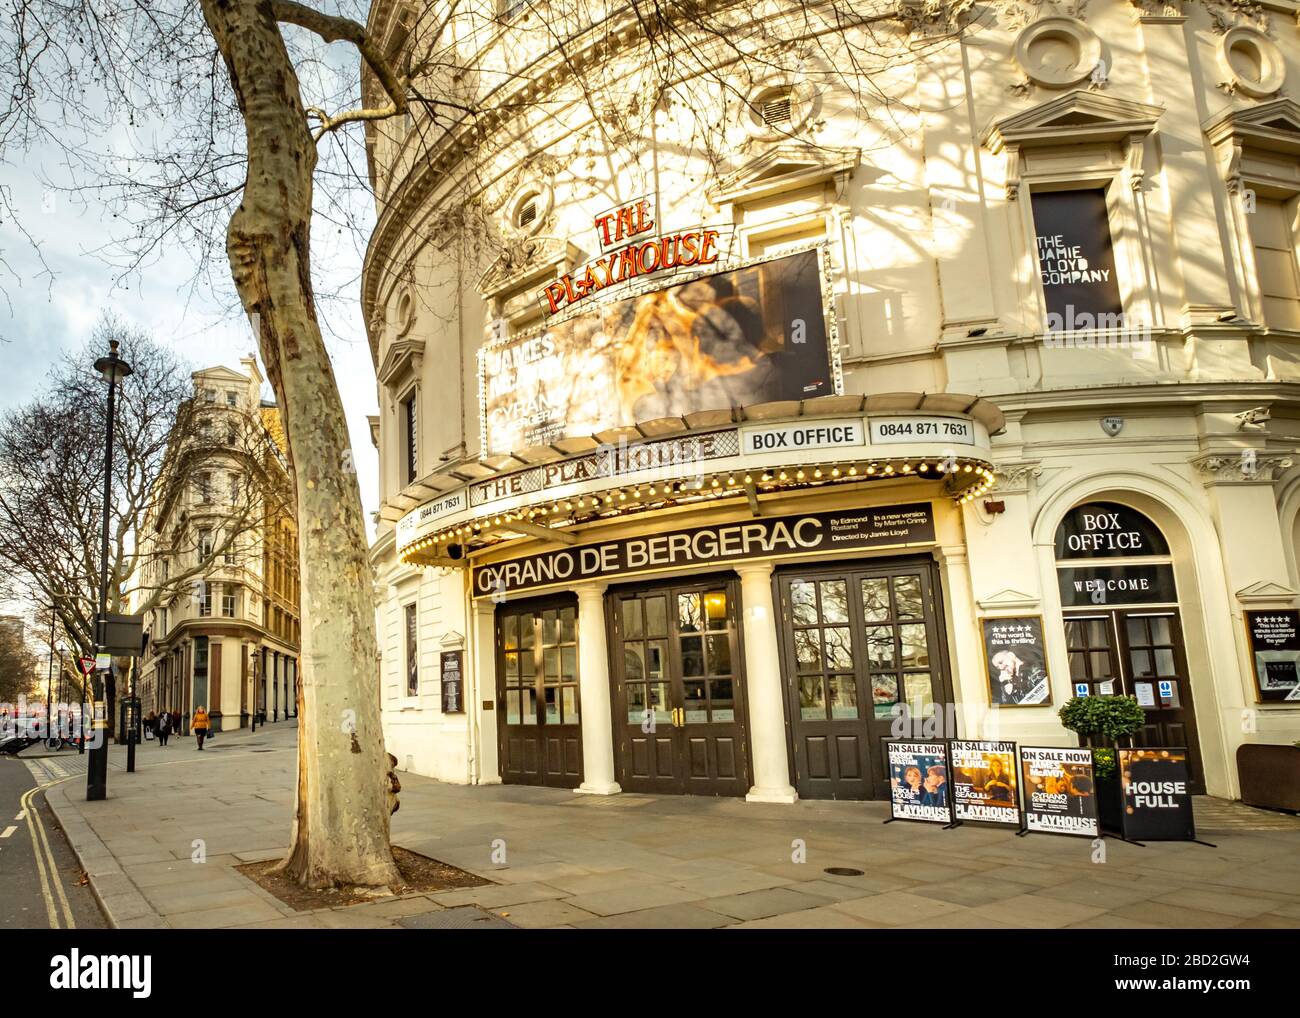 LONDRA - MARZO 2019: Playhouse Theatre vicino a Trafalgar Square nel West End di Londra. Attualmente mostra il Cyrano de Bergerac con James McAvoy Foto Stock